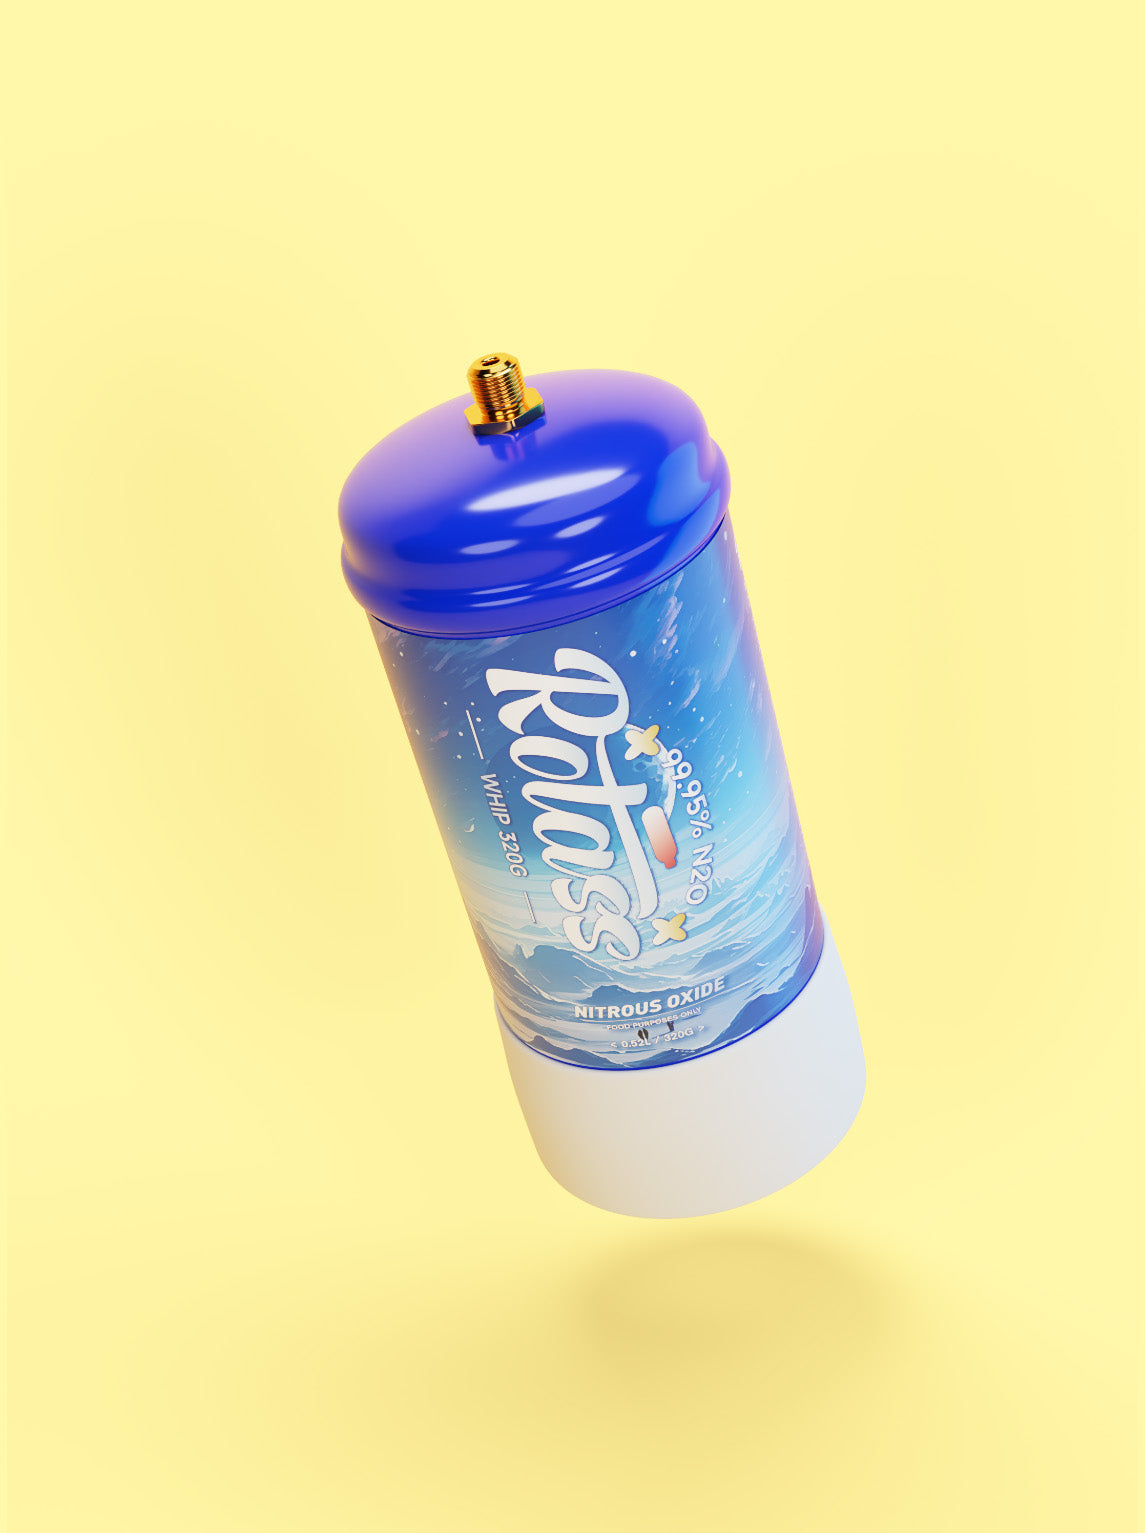 Gekippte Ansicht: Die Gasflasche ist im Antarktis-Style designed, mit dem weißen Logo "Rotass" 320g. Der Hintergrund ist hellgelb.